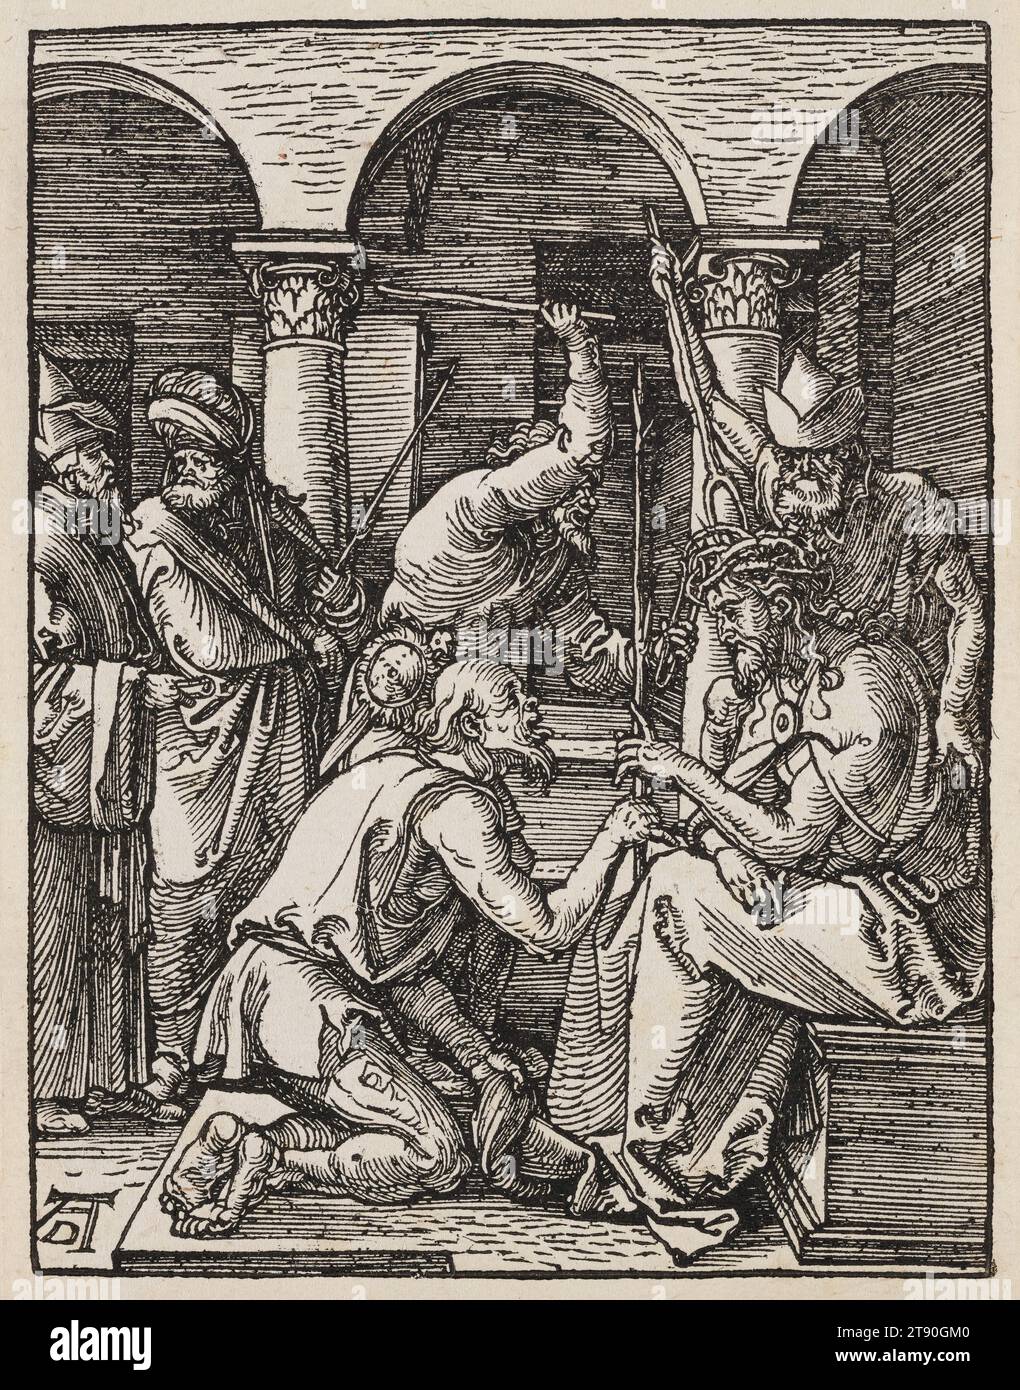 Christus mit Dornen gekrönt, um 1509, Albrecht Dürer, Deutsch, 1471–1528, 5 x 3 13/16 Zoll (12,7 x 9,68 cm) (Bild)5 5/16 x 4 1/8 Zoll (13,49 x 10,48 cm) (Blatt), Holzschnitt, Deutschland, 16. Jahrhundert, Christus sitzt auf einer Steinbank, umgeben von drei Peiniger. Die Krone ist so stachelig, dass einer der Männer sie mit einer Zange hält, während ein anderer sie mit einer Gabel auf den Kopf Christi drückt. Der dritte Mann kniet vor ihm und streckt seine Zunge aus, händigt Christus sein Zepter, einen Schössling oder einen Baumzweig, aus dem nach der Legende ein weiteres Kreuz wachsen könnte. Im Hintergrund zwei Zahlen Stockfoto